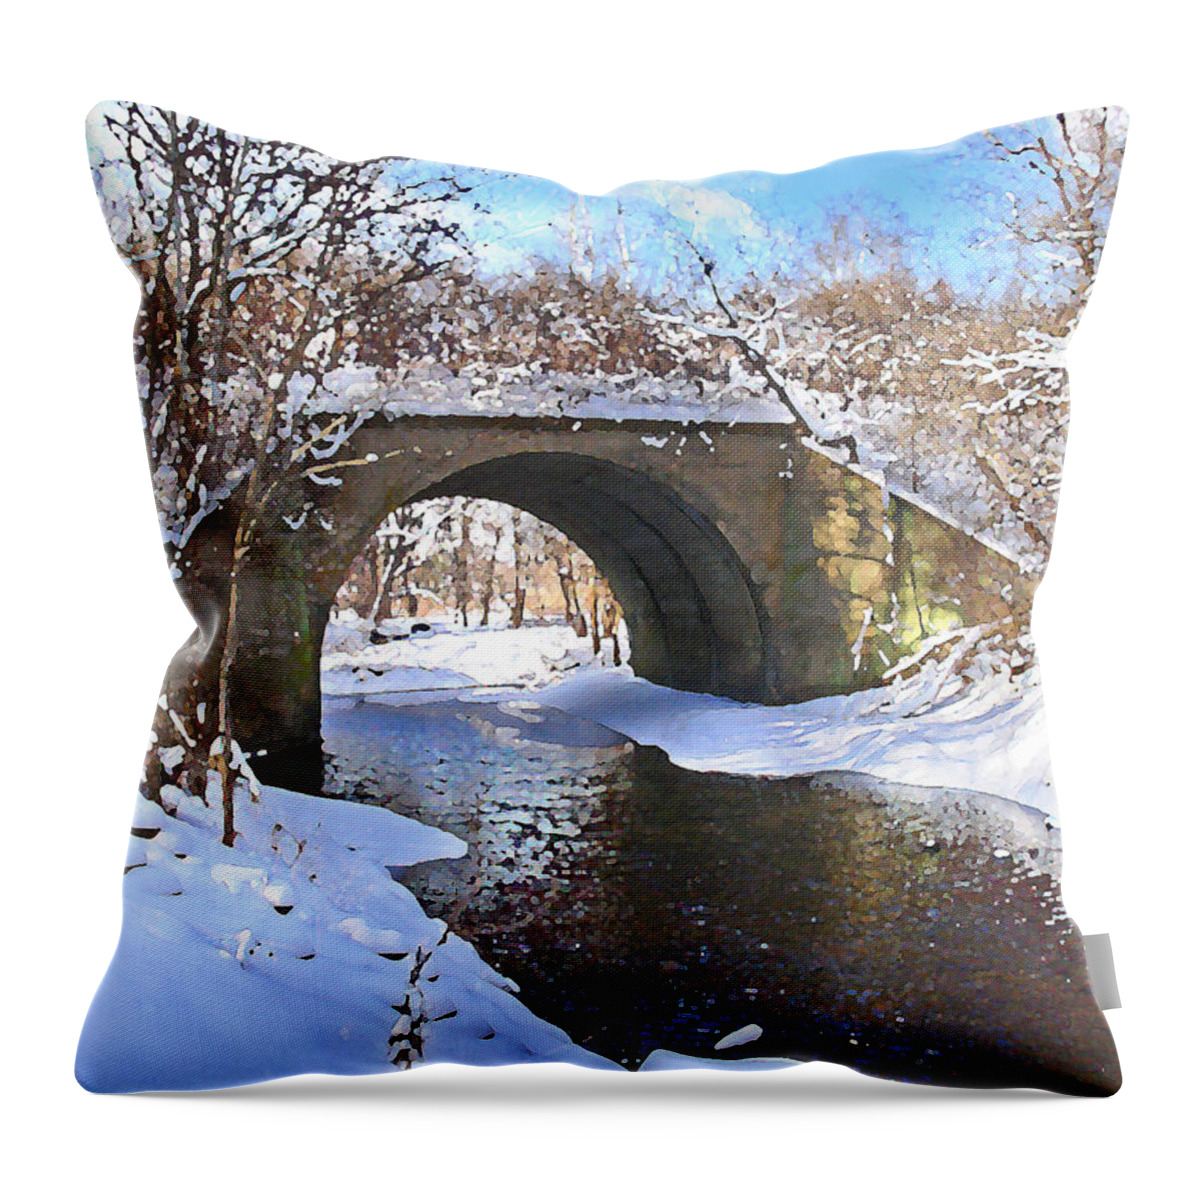 Landscape Throw Pillow featuring the digital art McGowan Bridge by Steve Karol